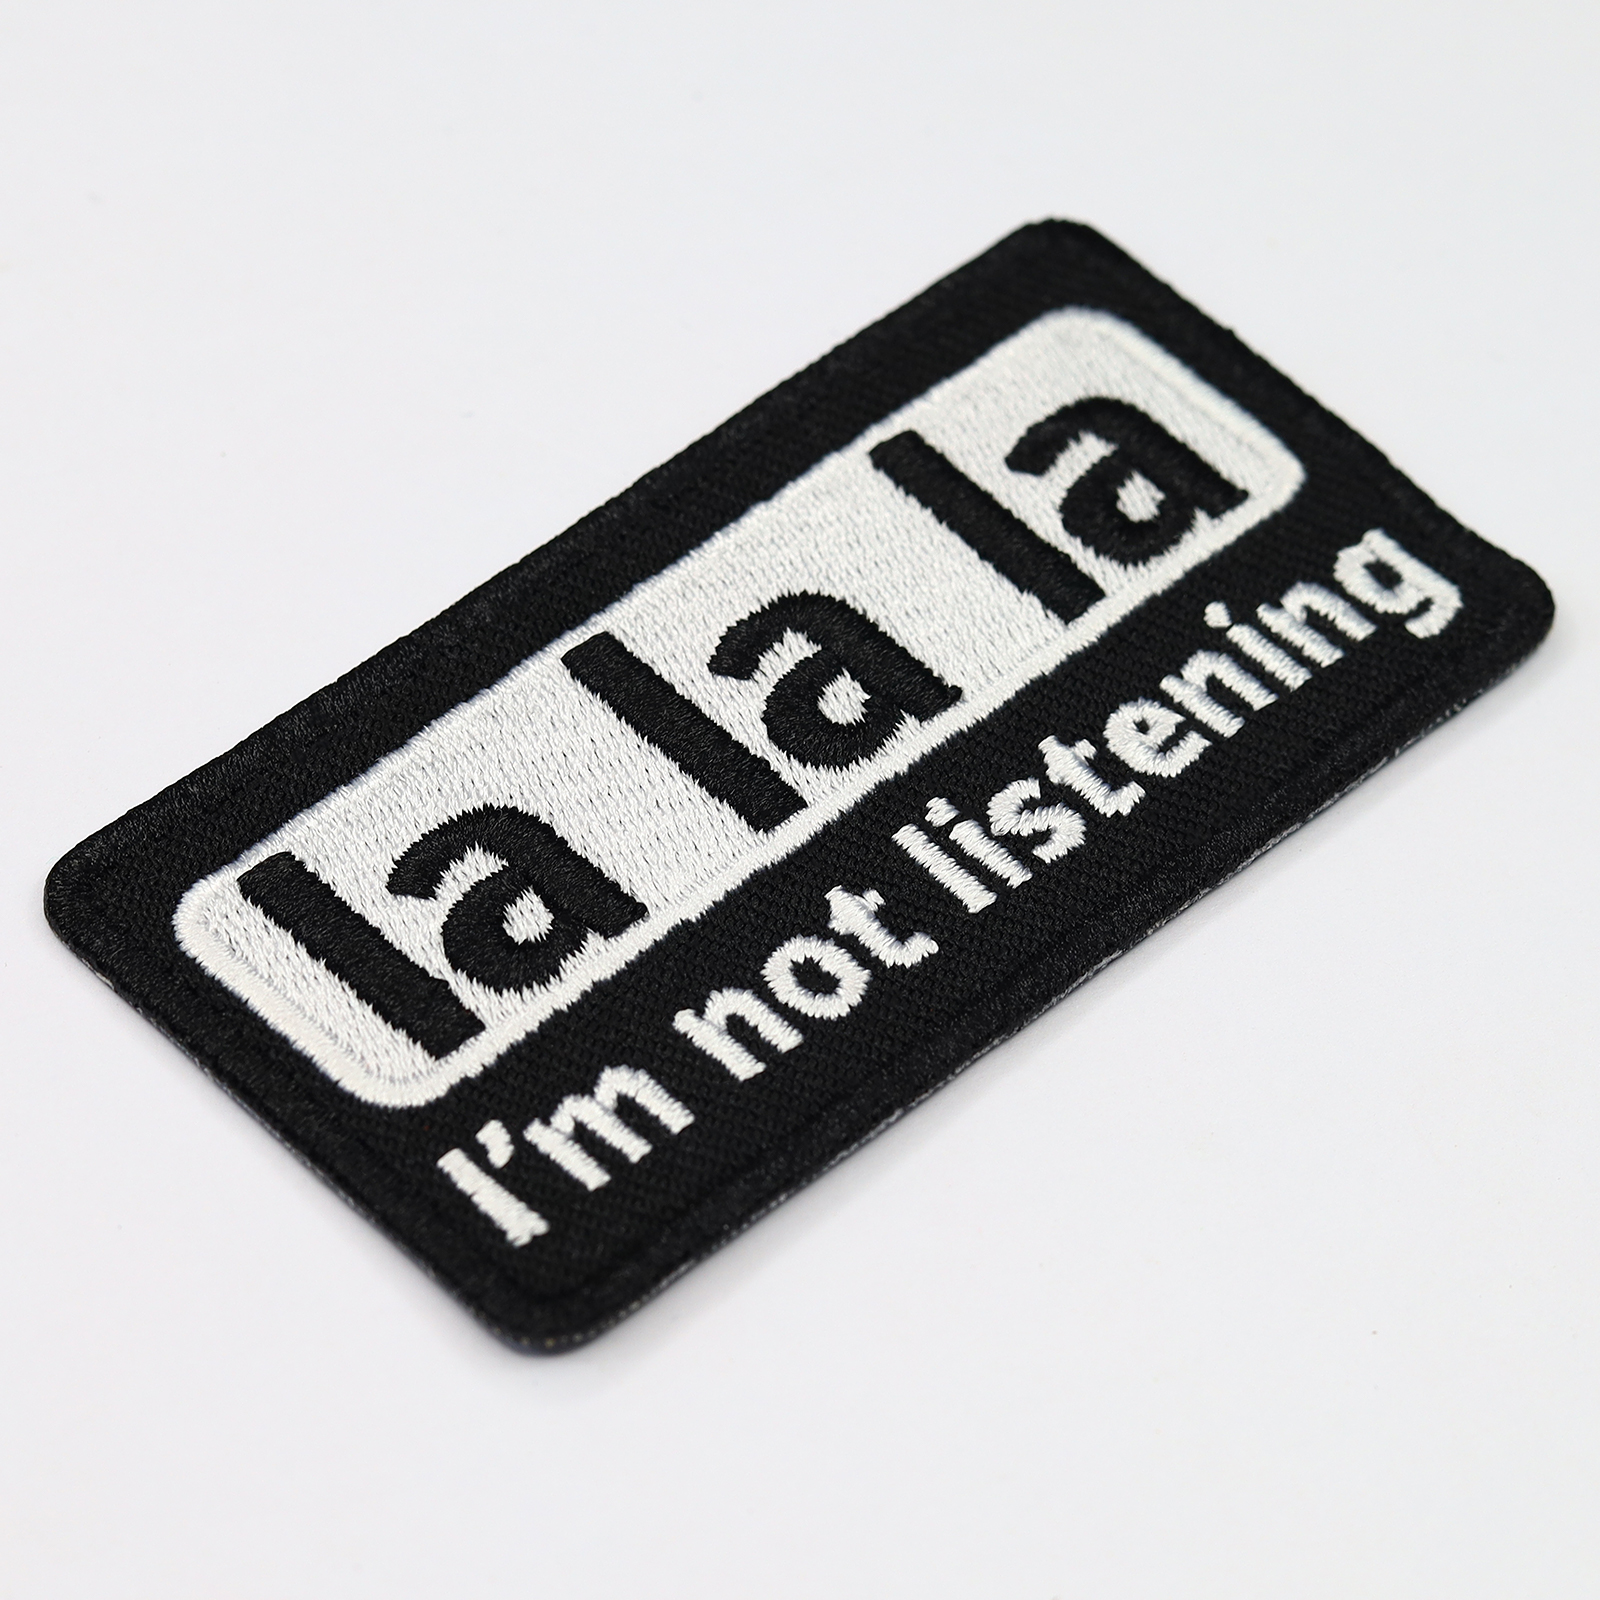 la la la - I'm not listening - Patch